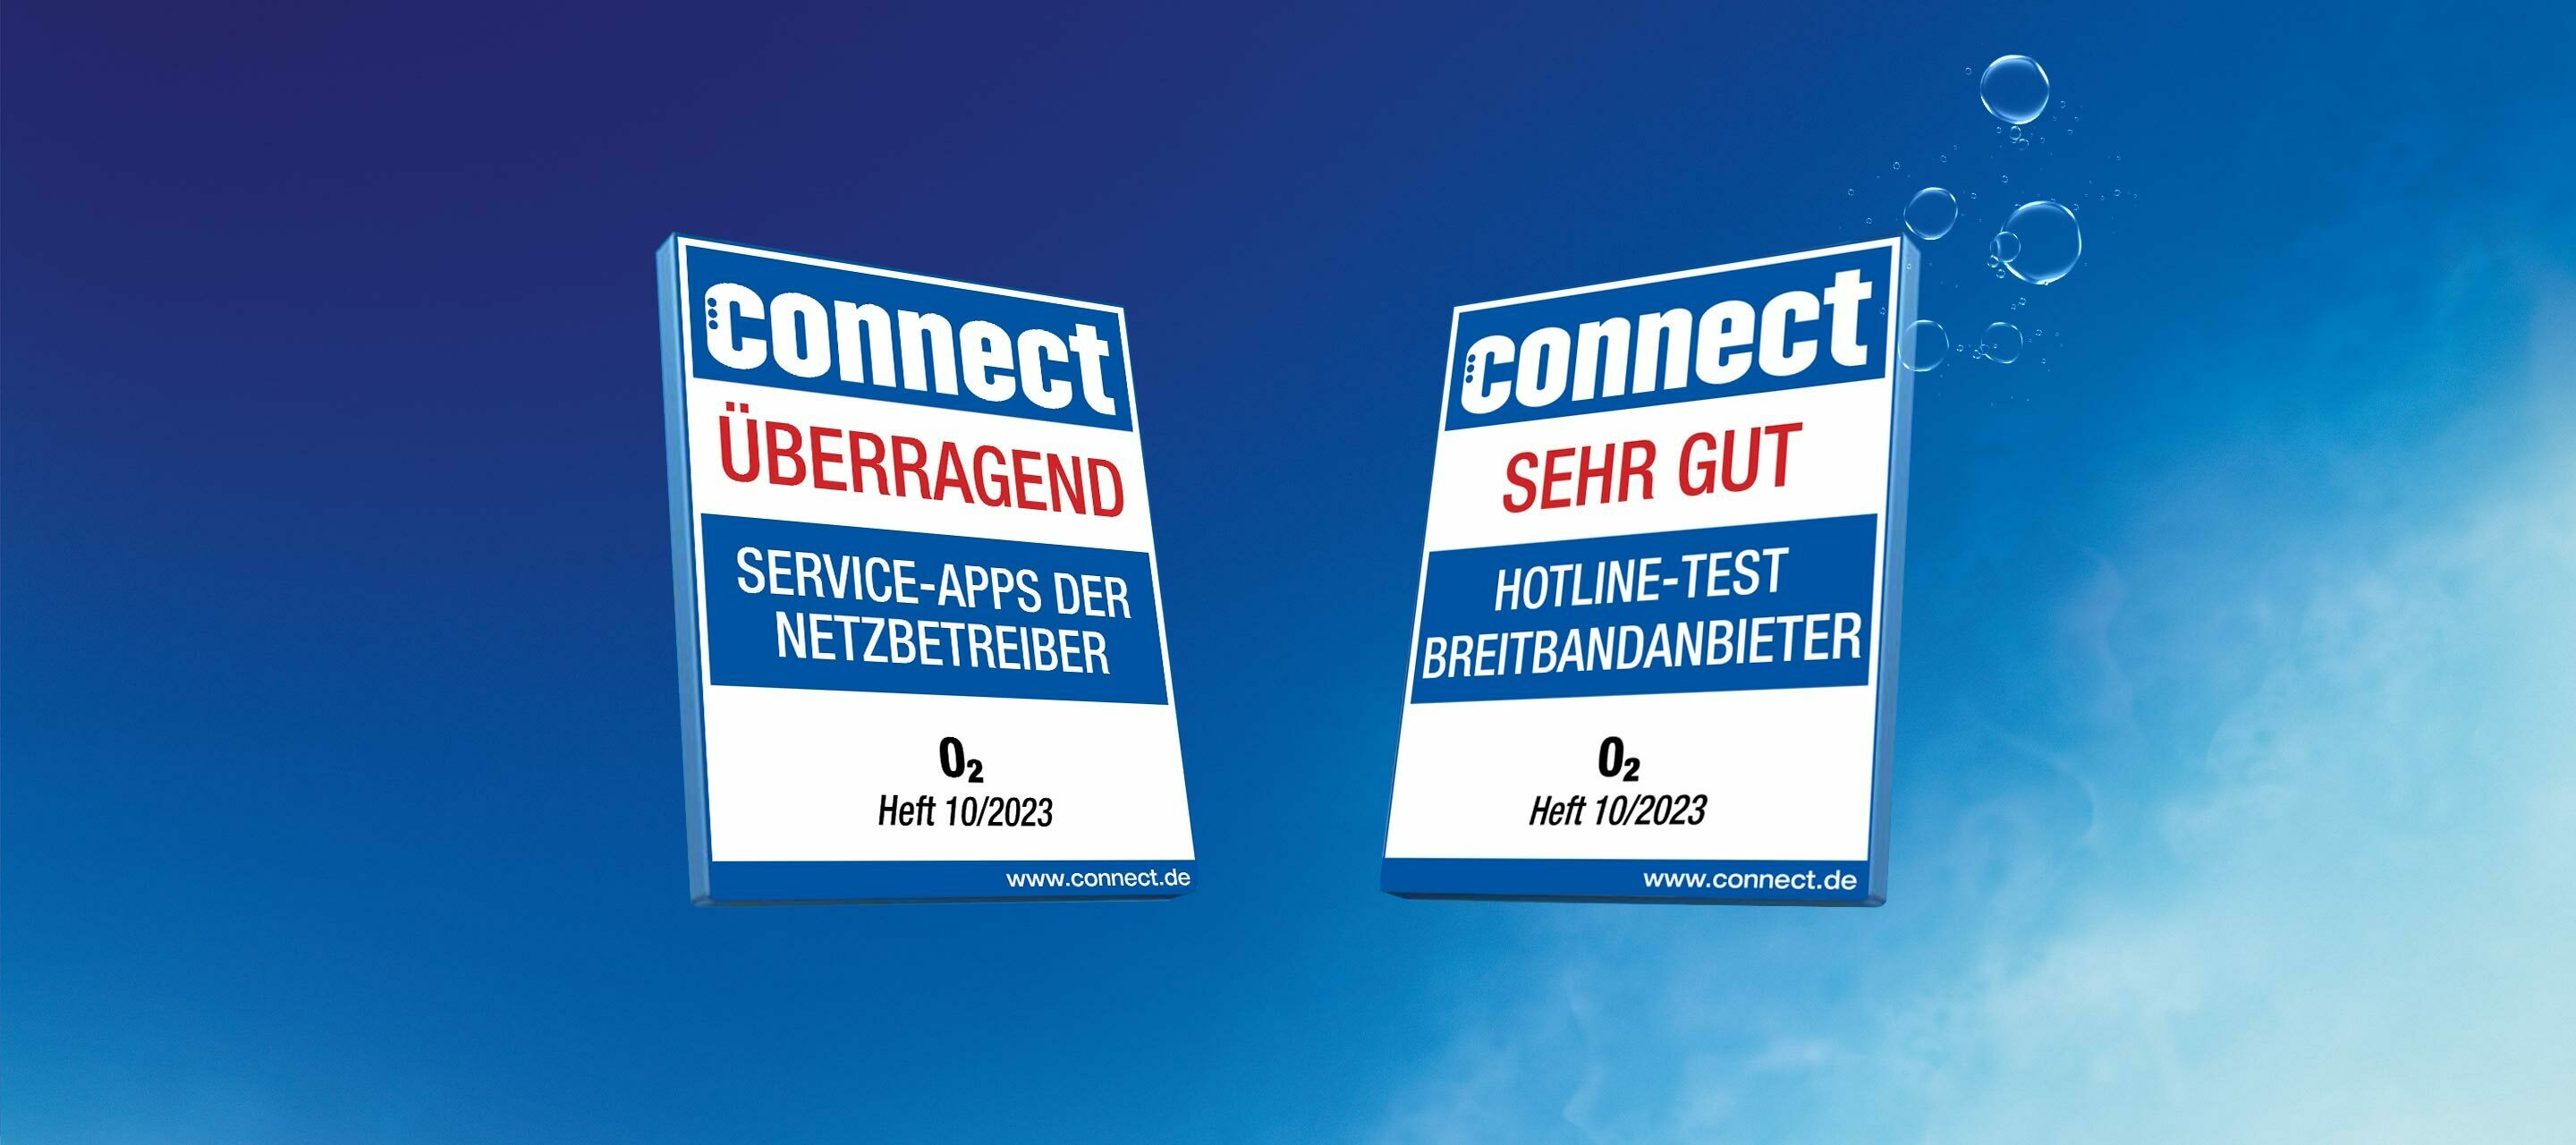 Festnetz-Hotline und Mein O₂ App überzeugen erneut im connect Test